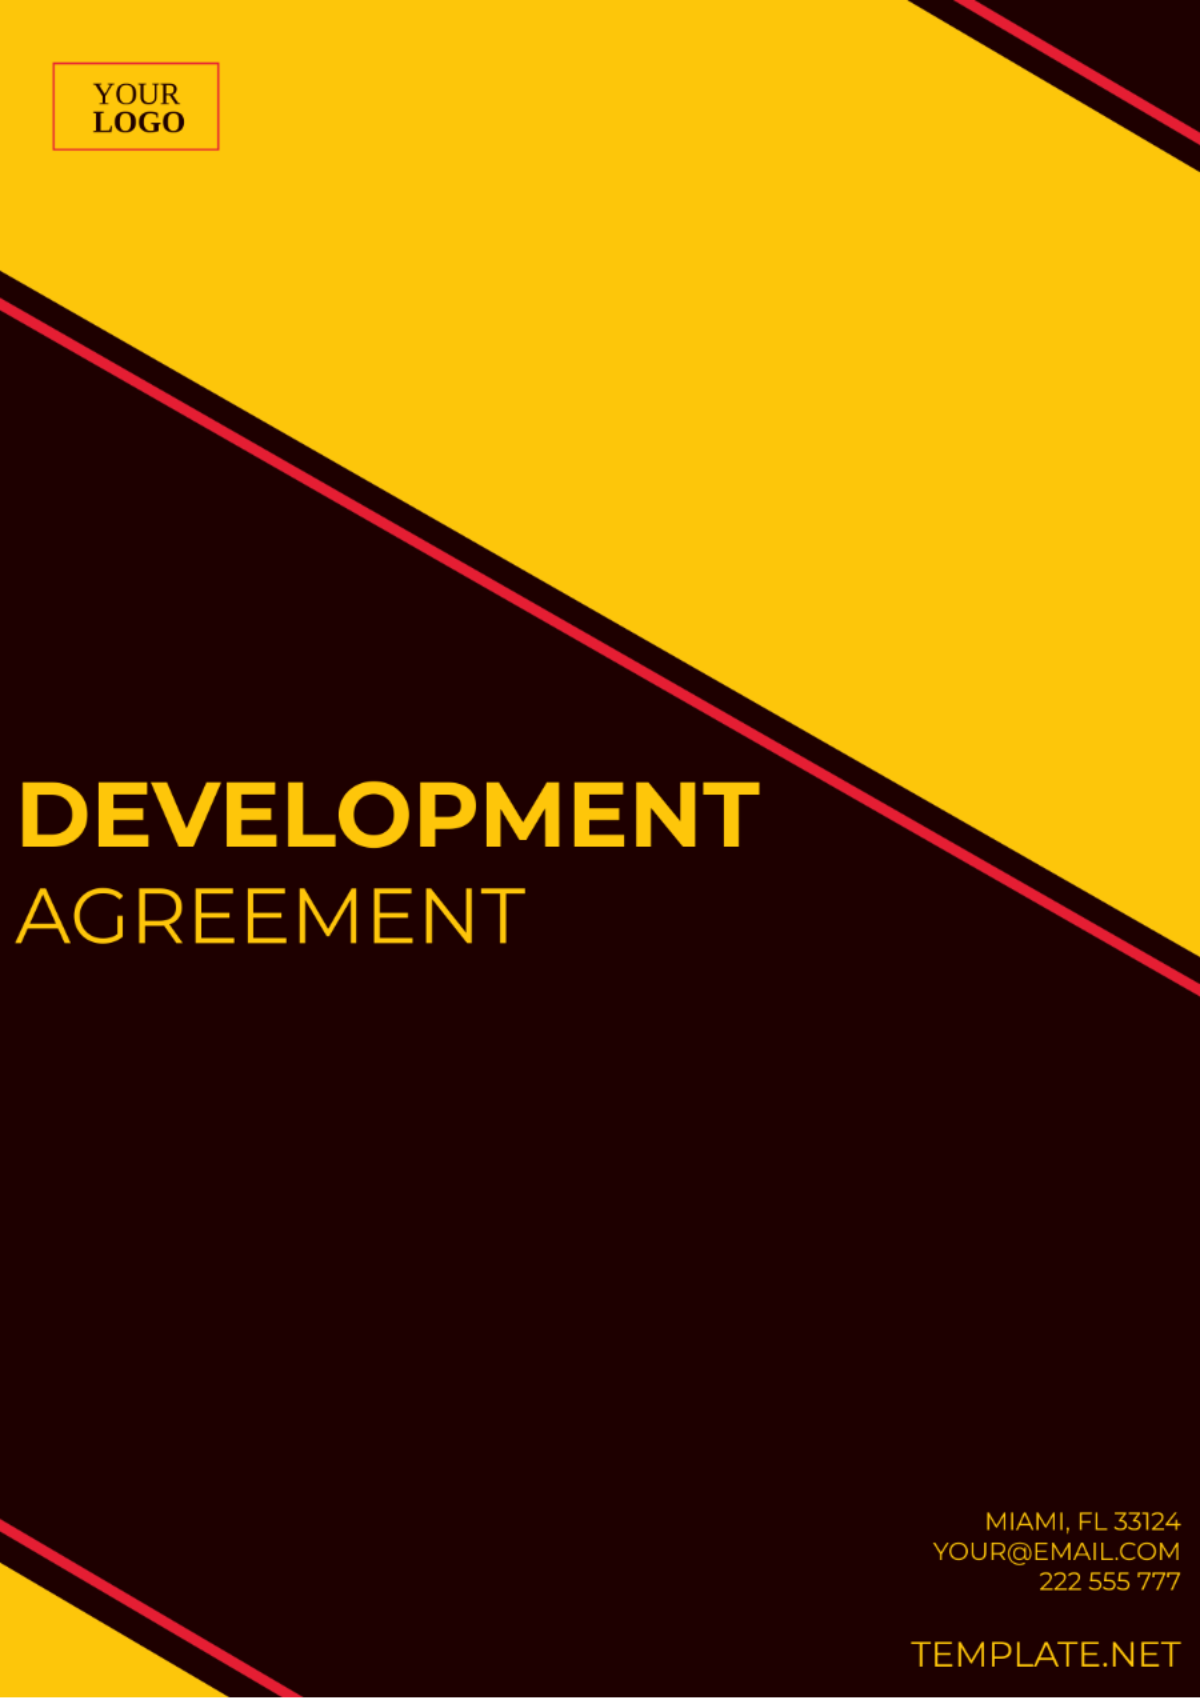 Development Agreement Template